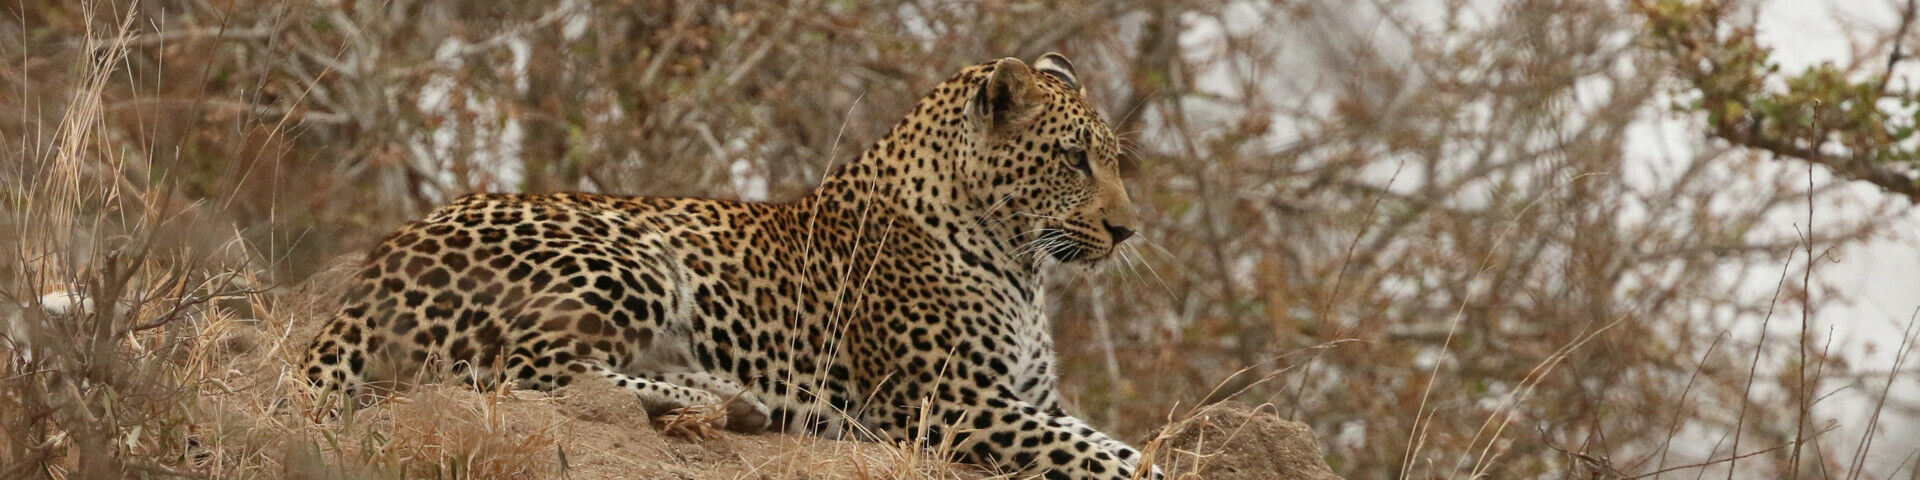 Kruger National Park Safari Guide Leopard 04 3272